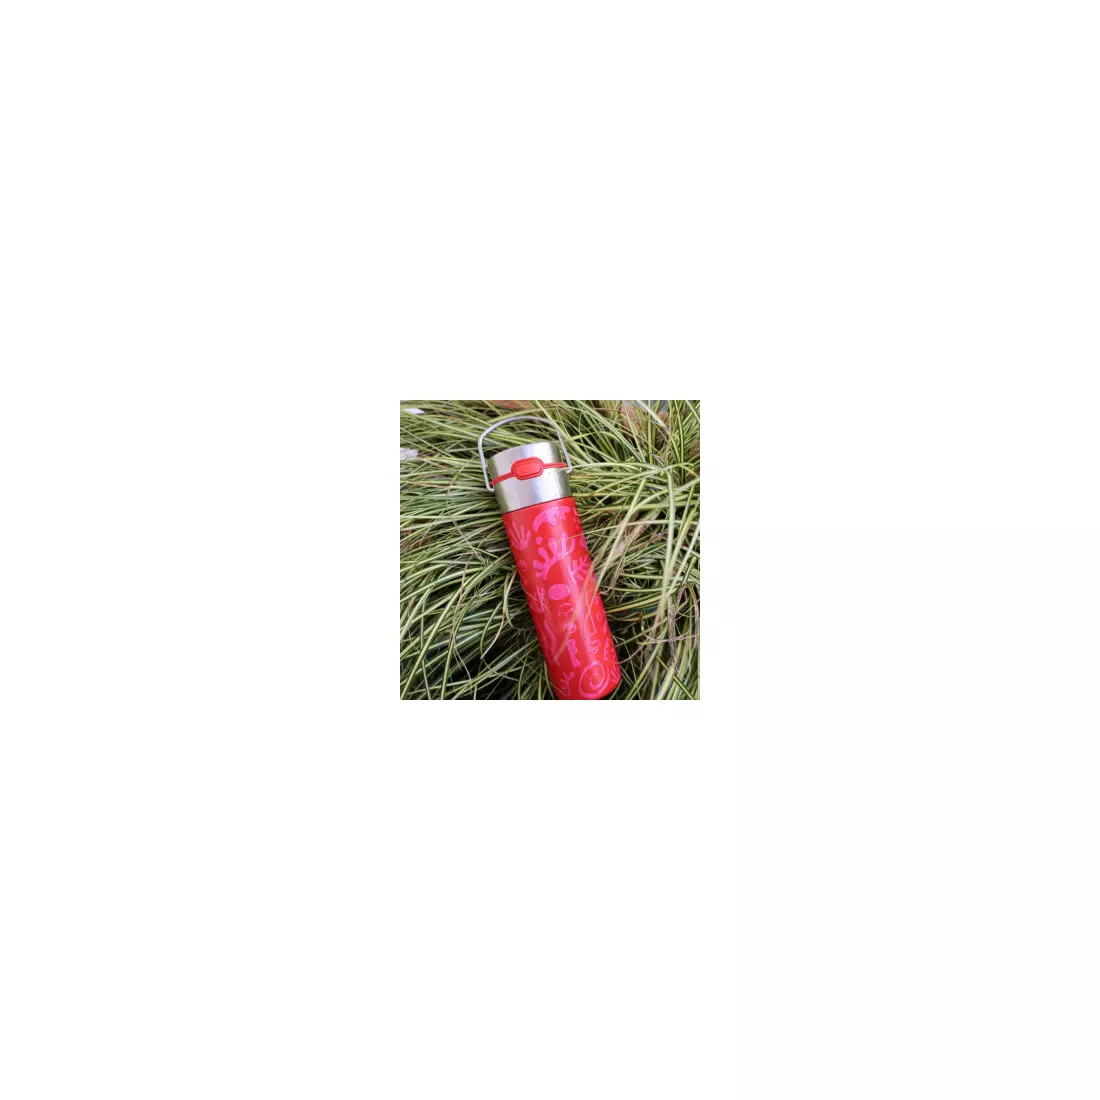 EIGENART LEEZA thermal bottle 500 ml, opera red